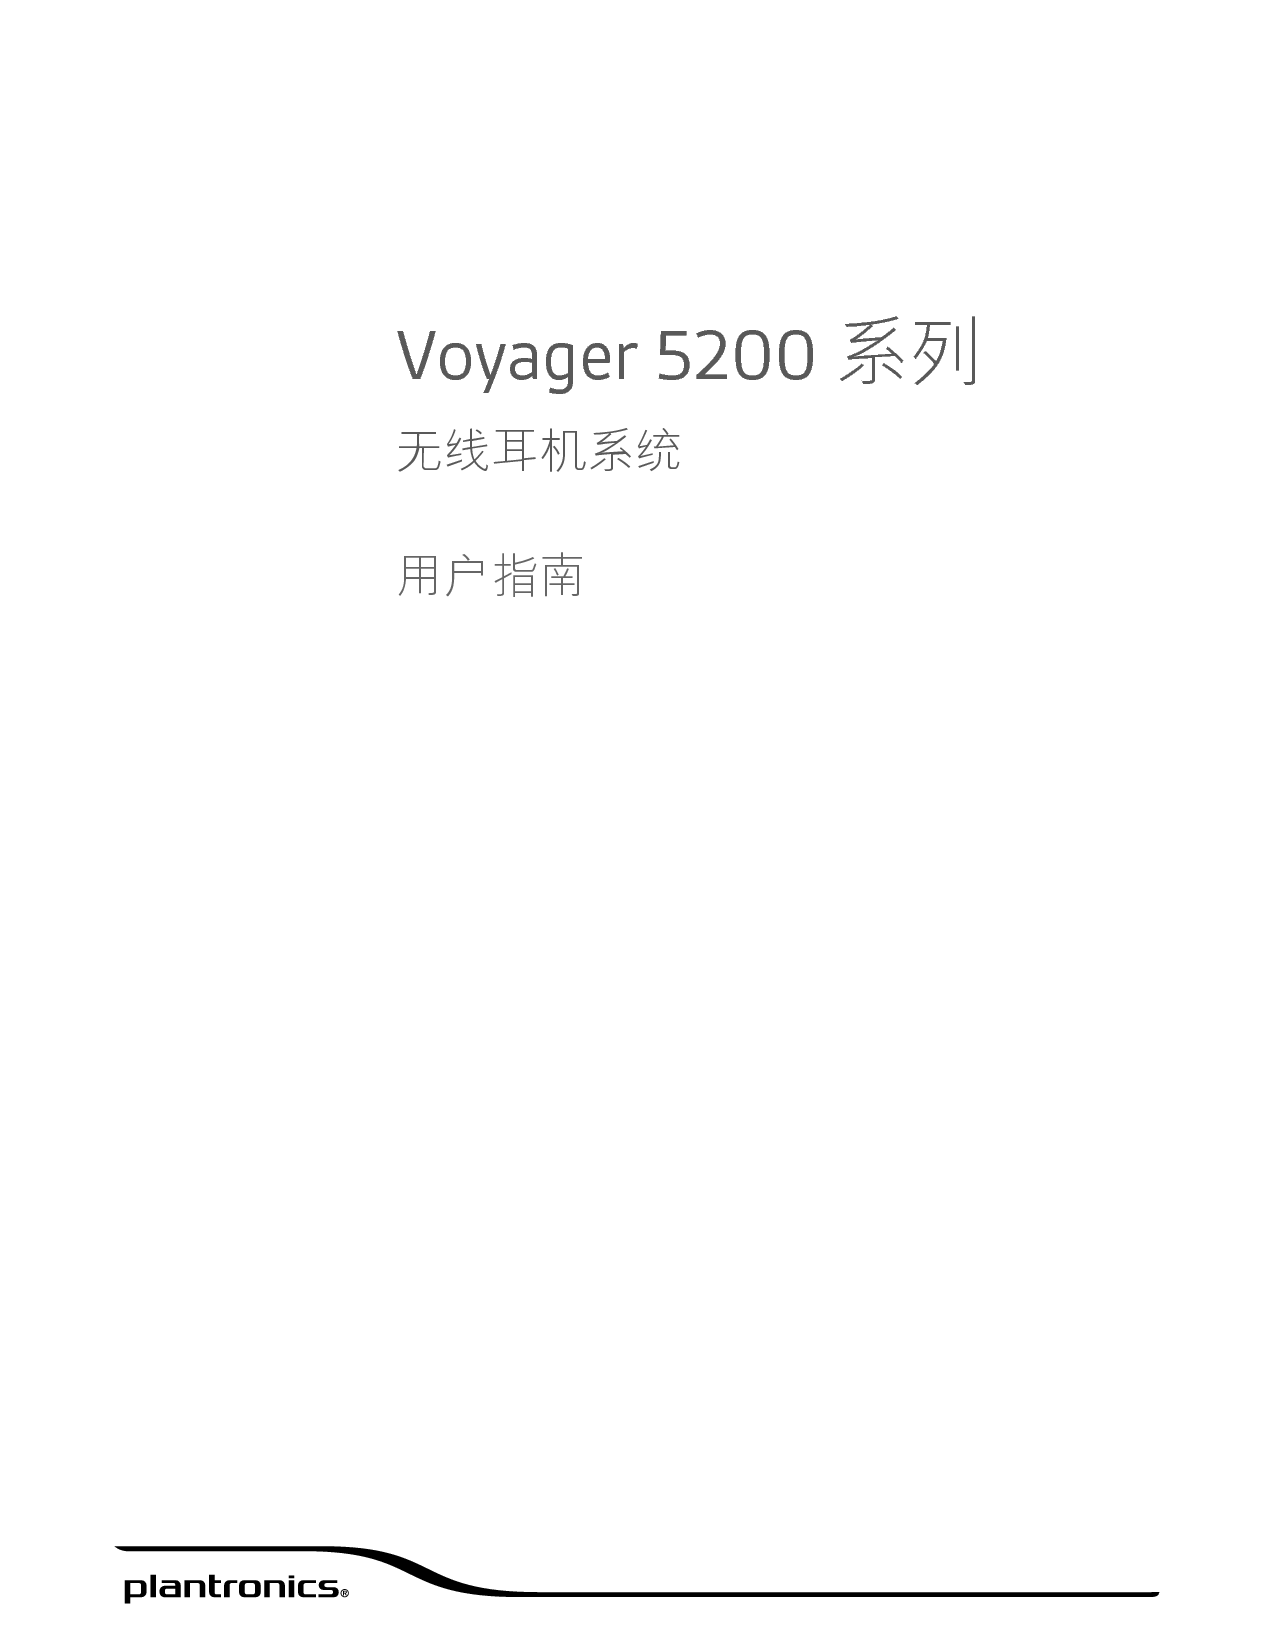 缤特力 Plantronics Voyager 5200 用户指南 封面